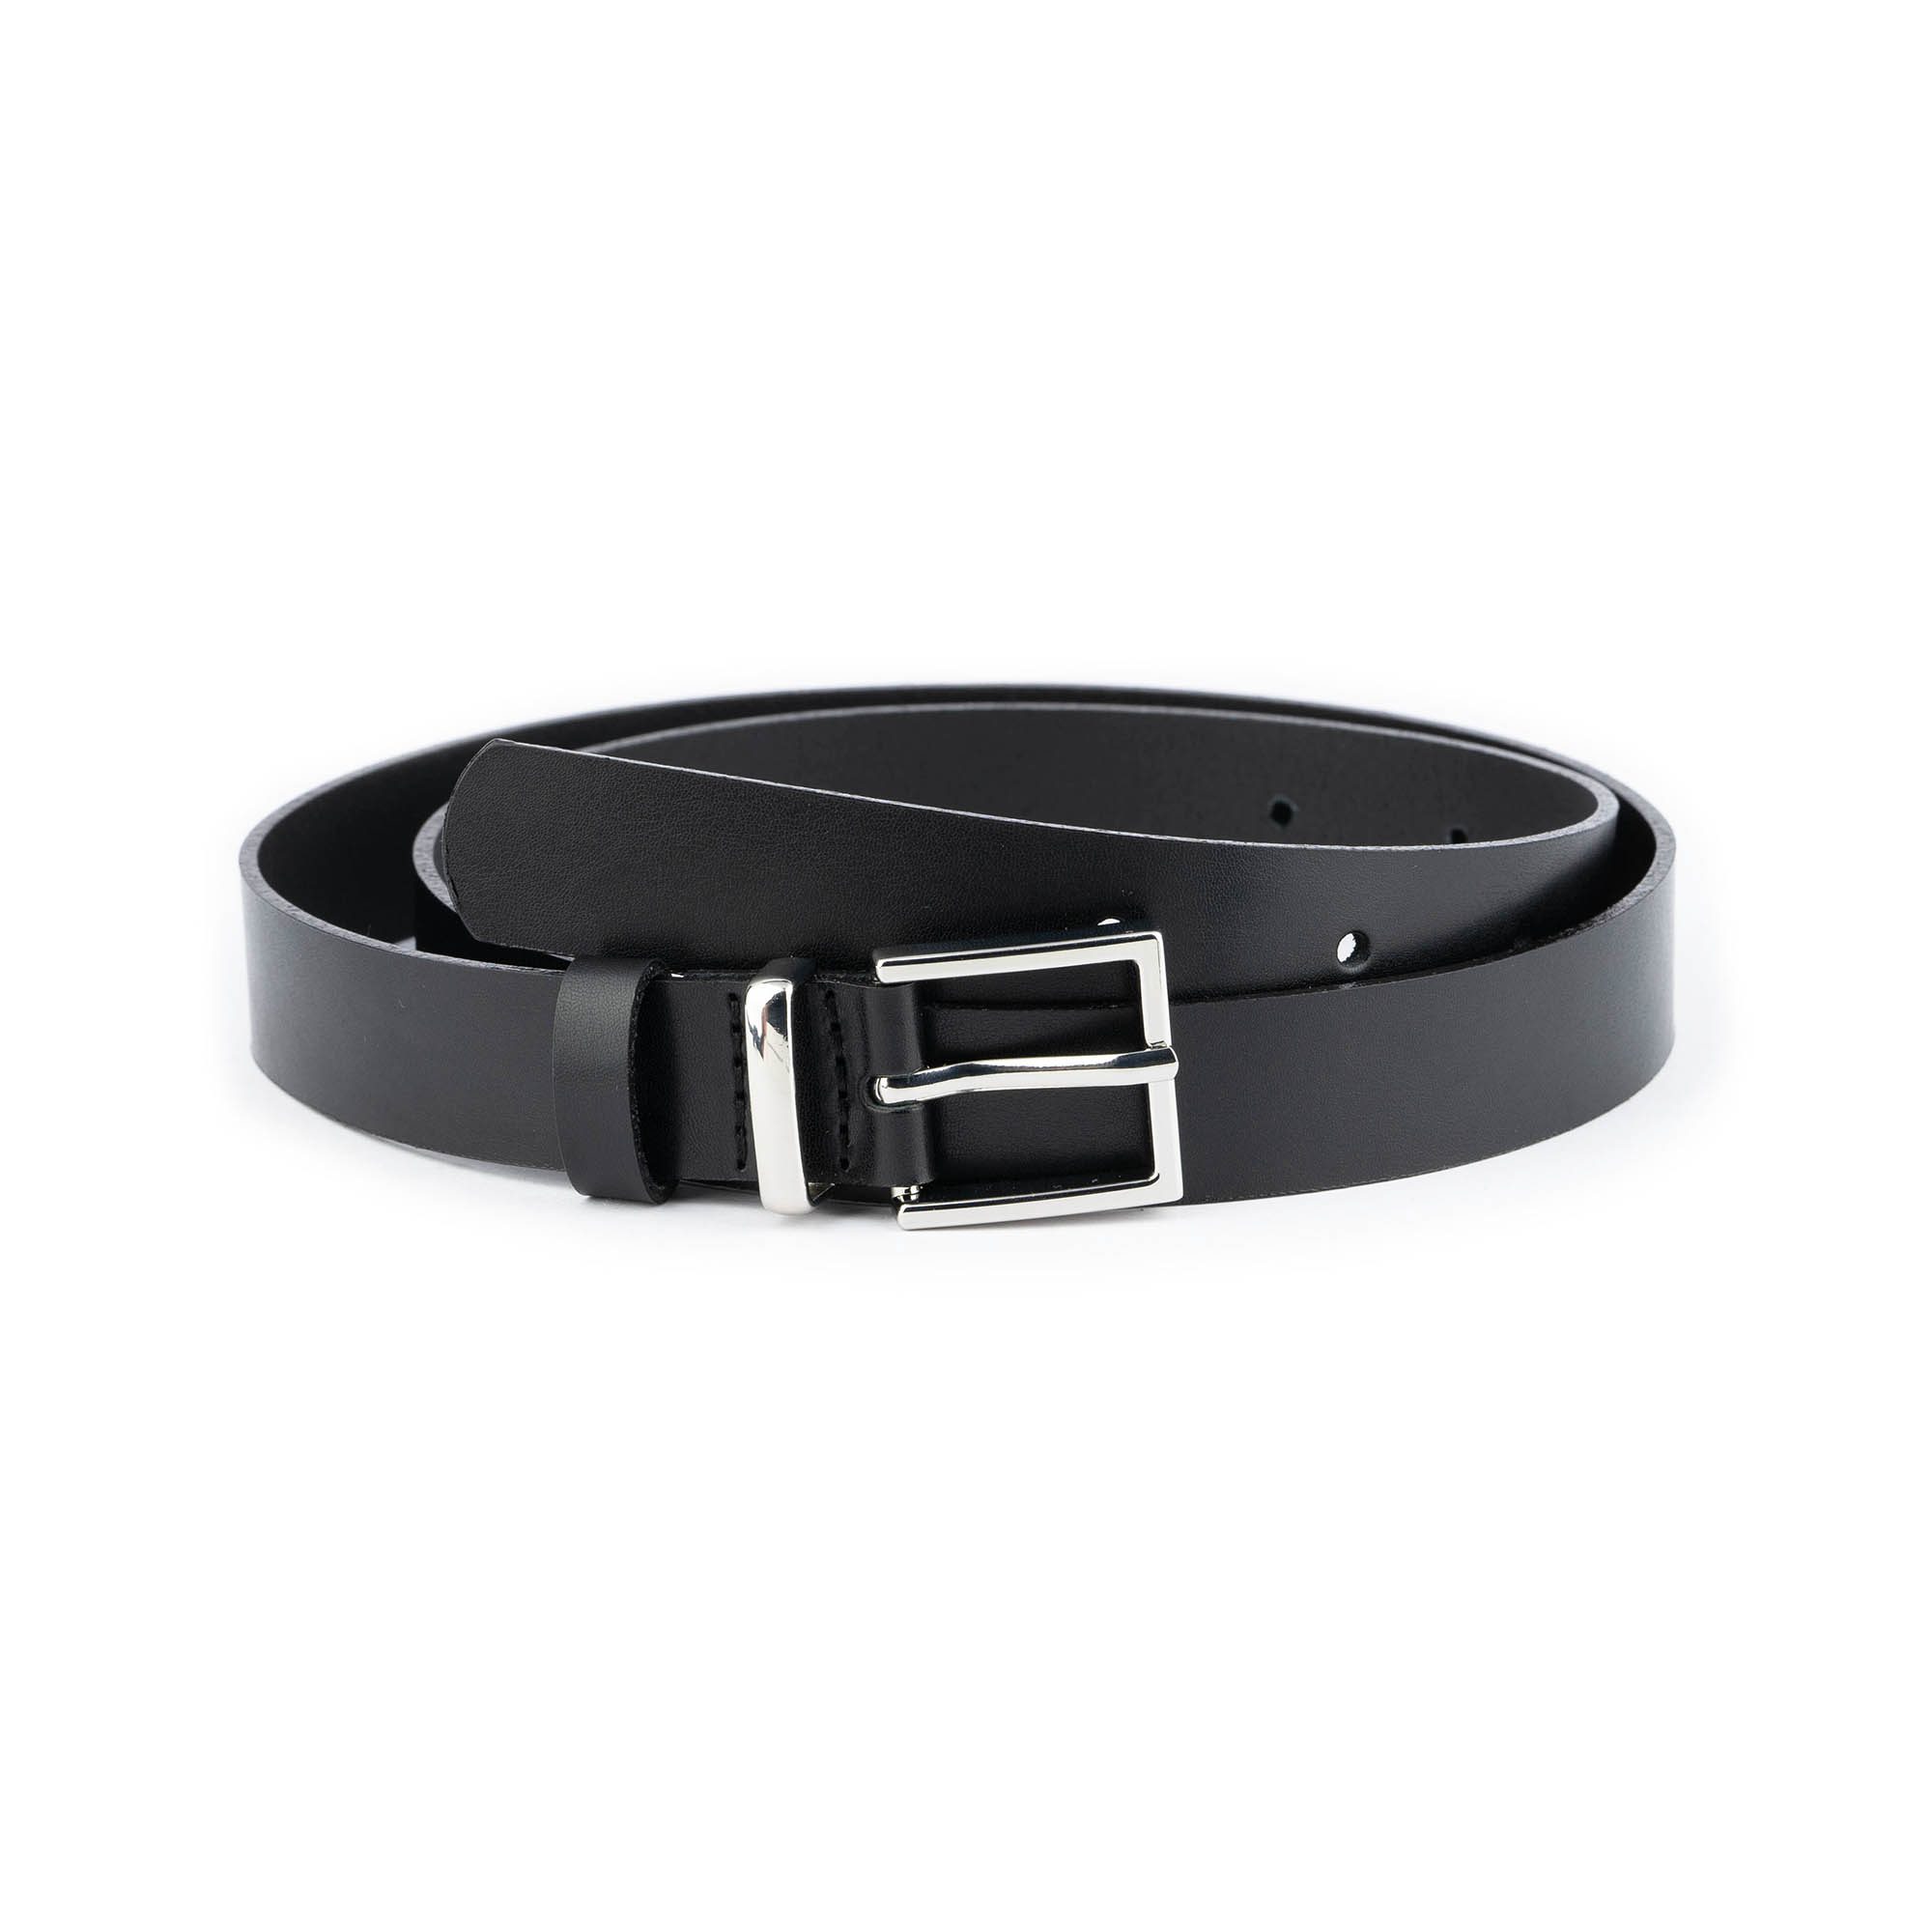 Buy Women's Belt Black Leather 1 Inch - LeatherBelt